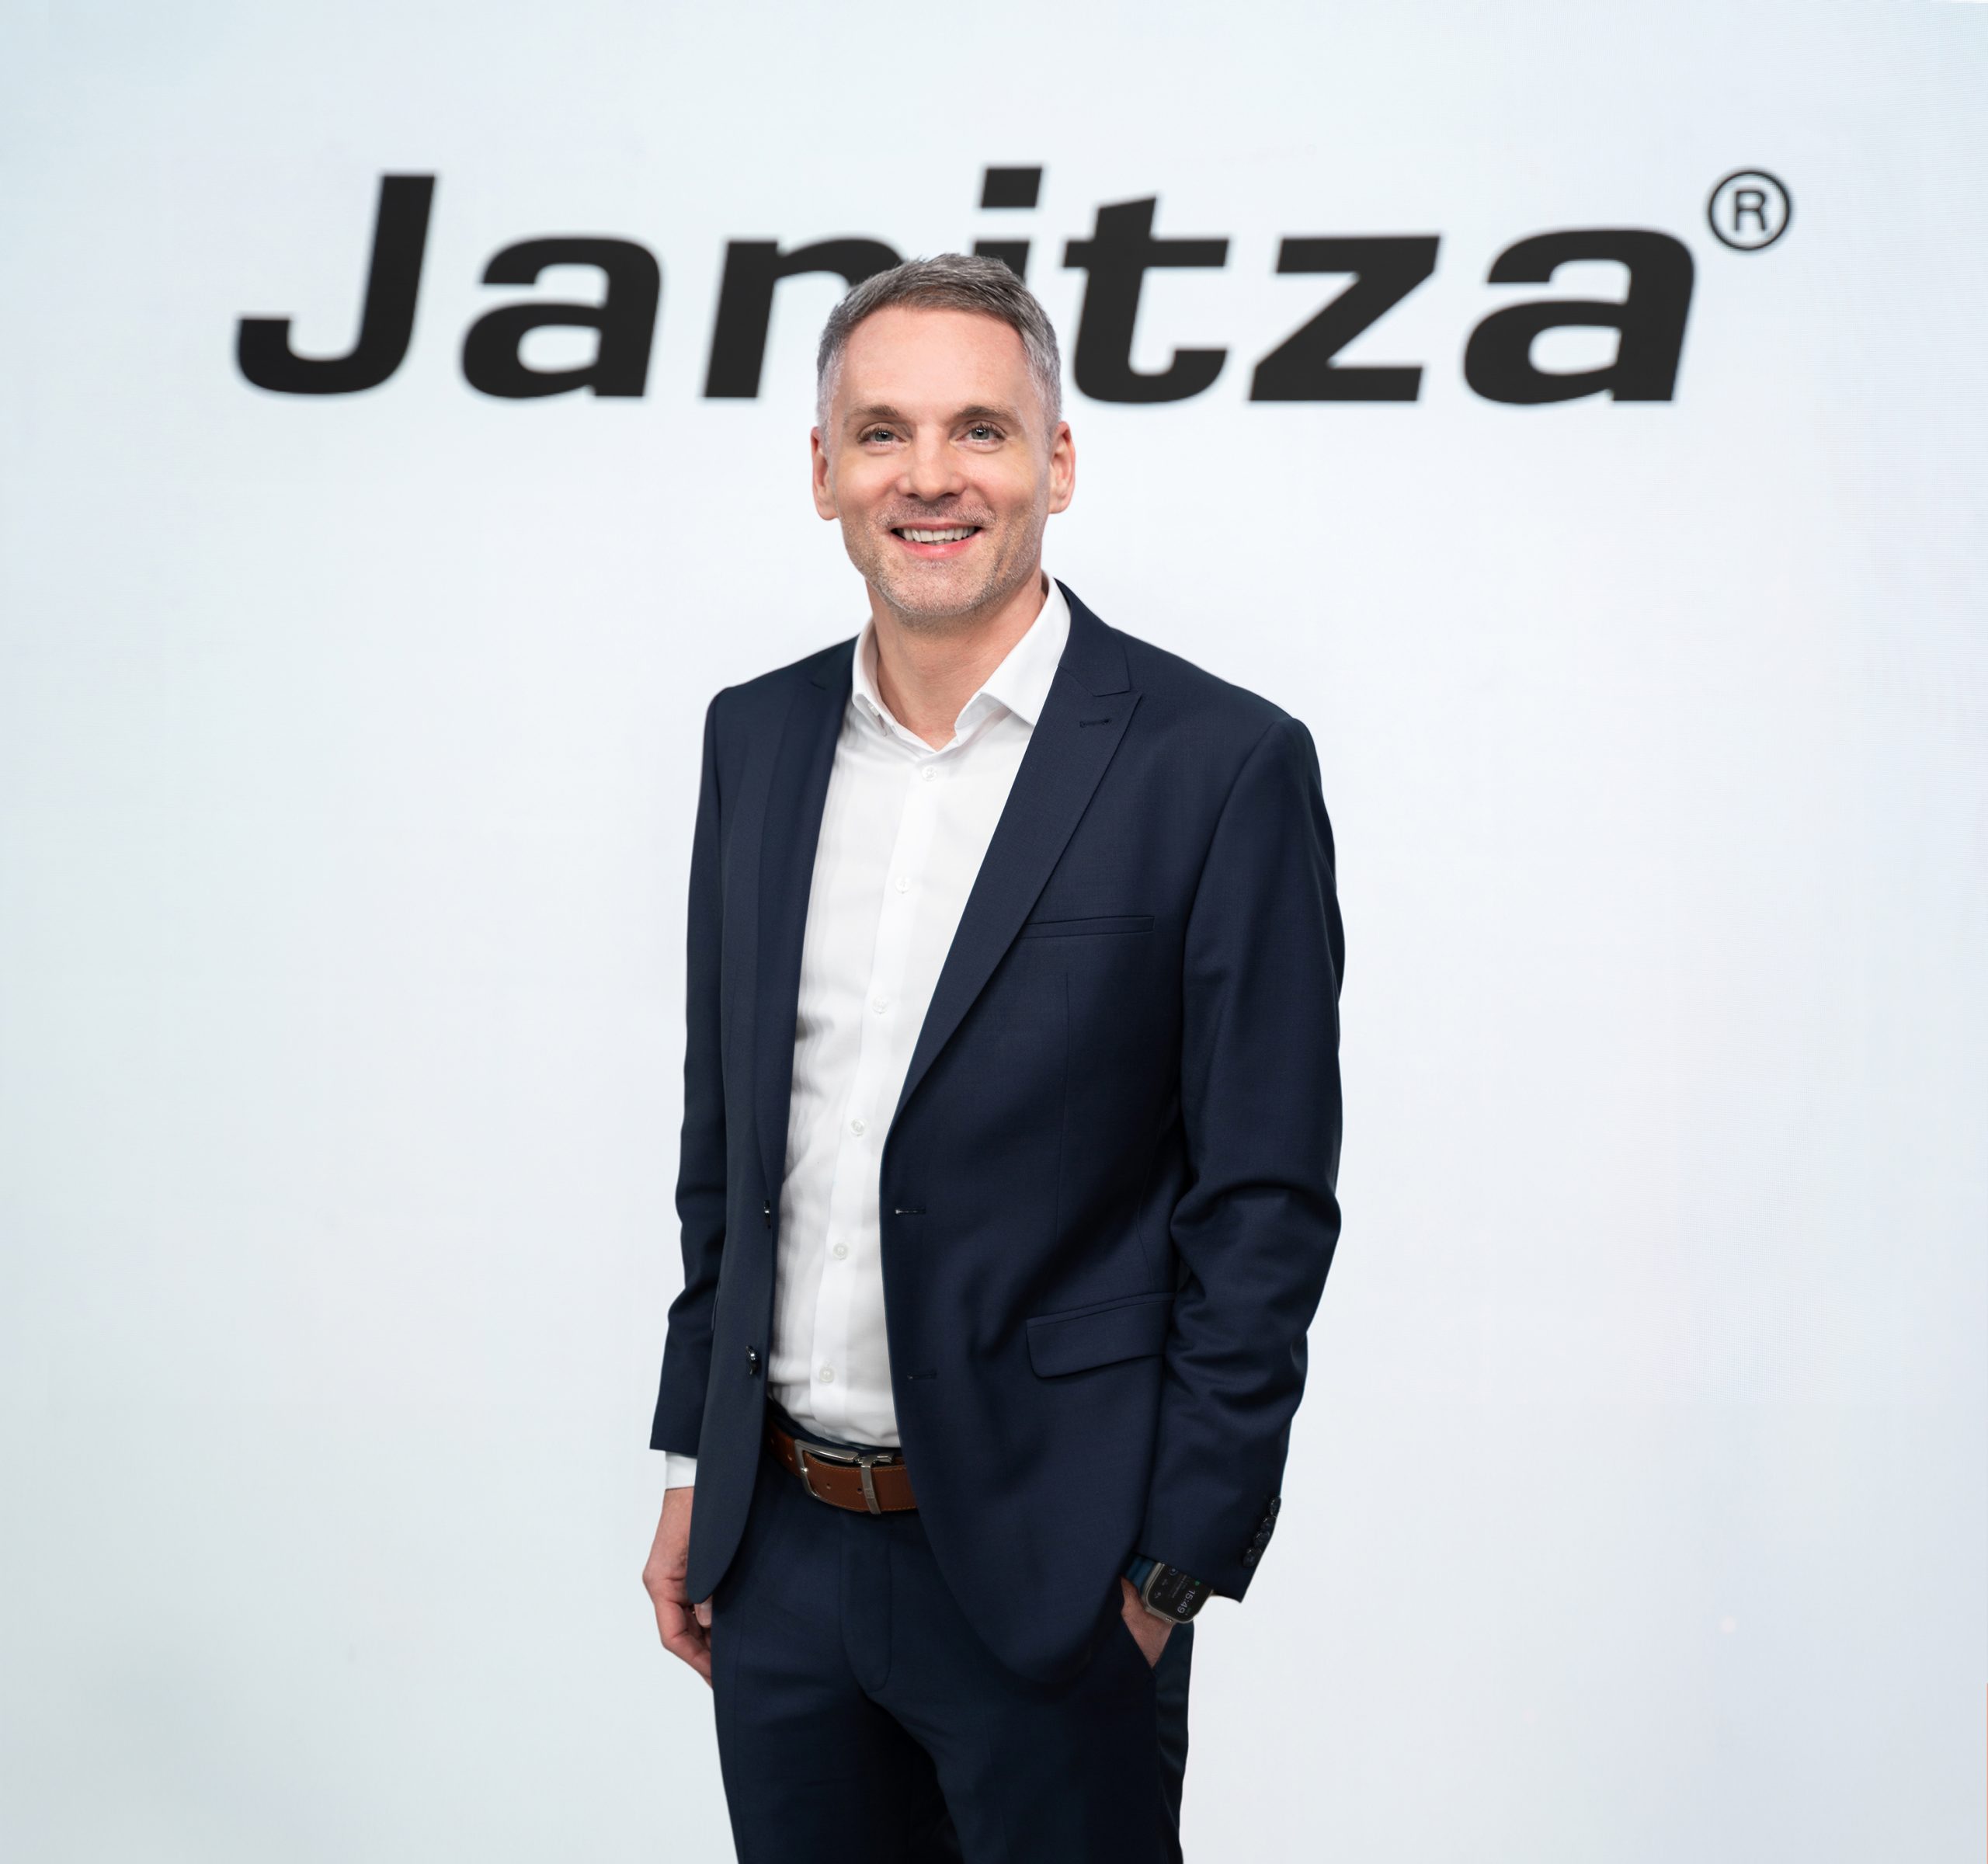 Janitza ernennt neuen kaufmännischen Geschäftsführer